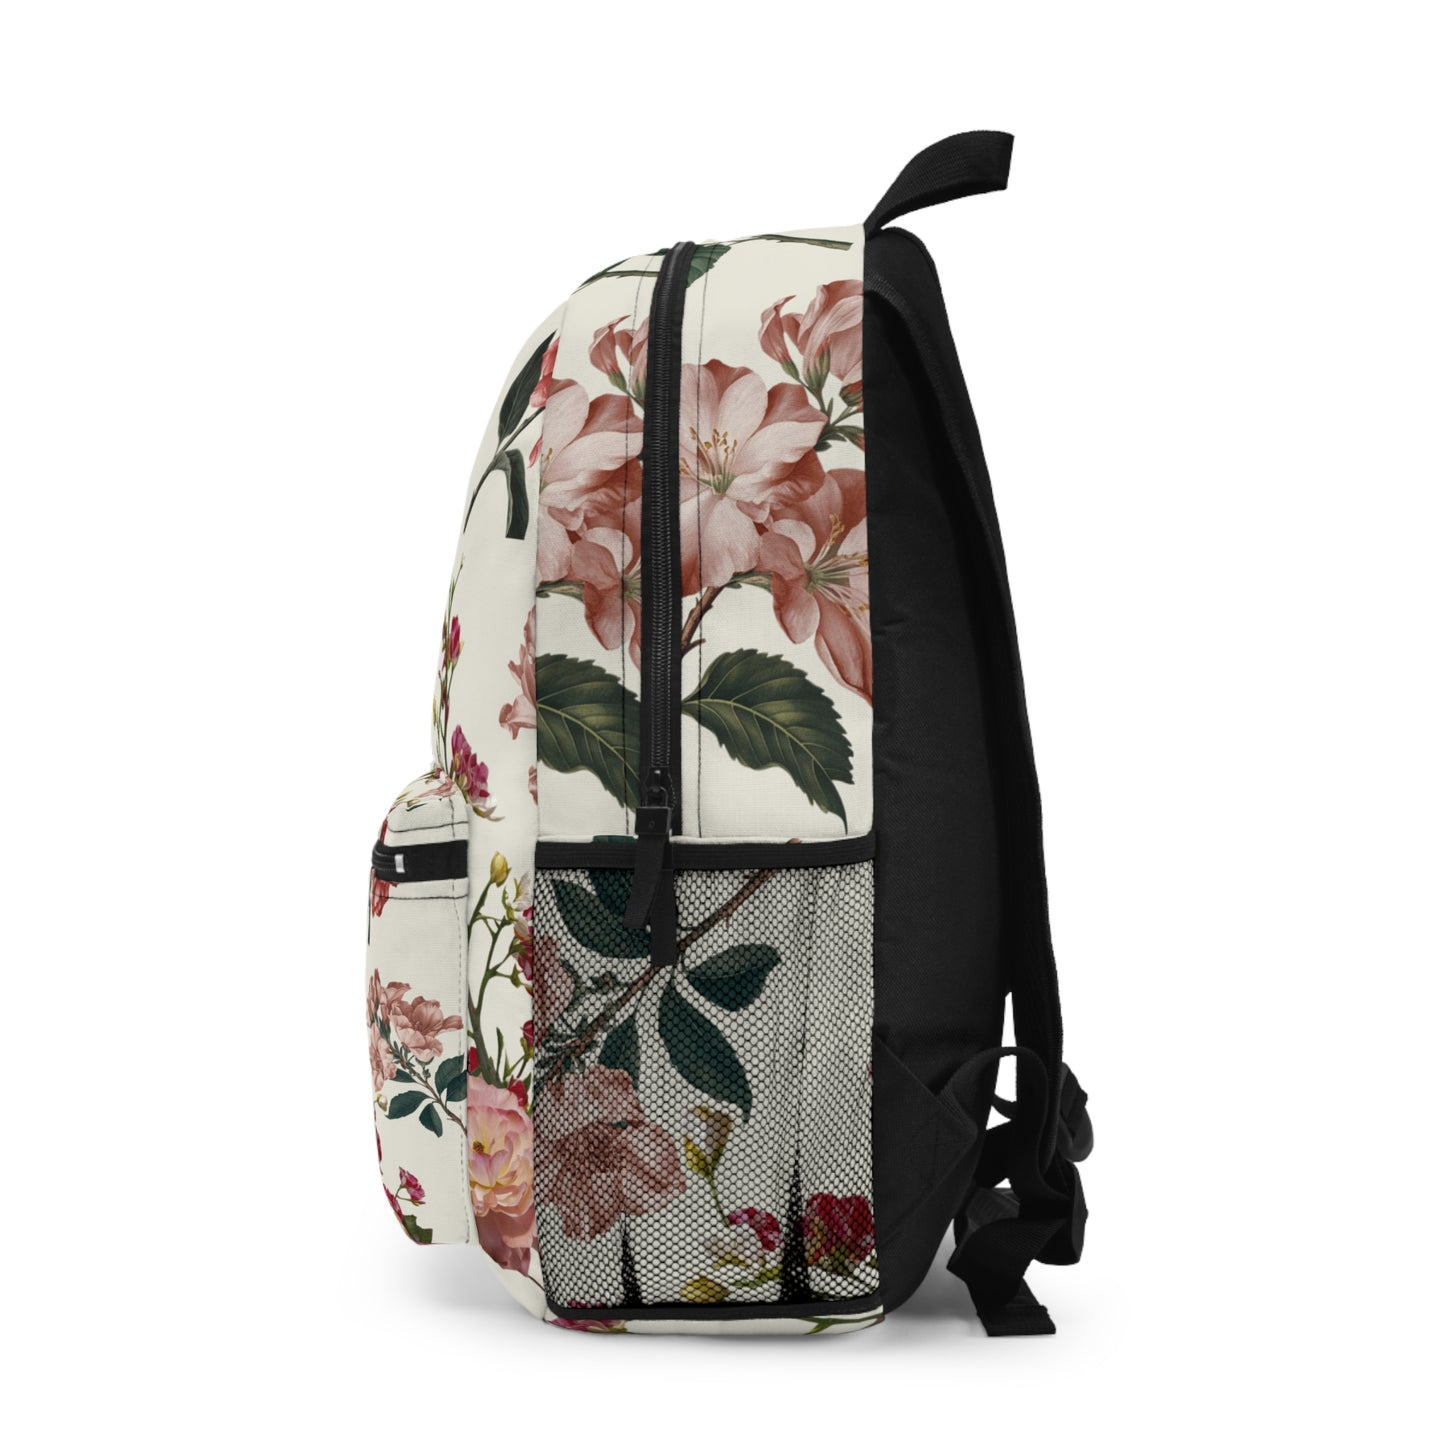 Botanicals on Beige - Backpack